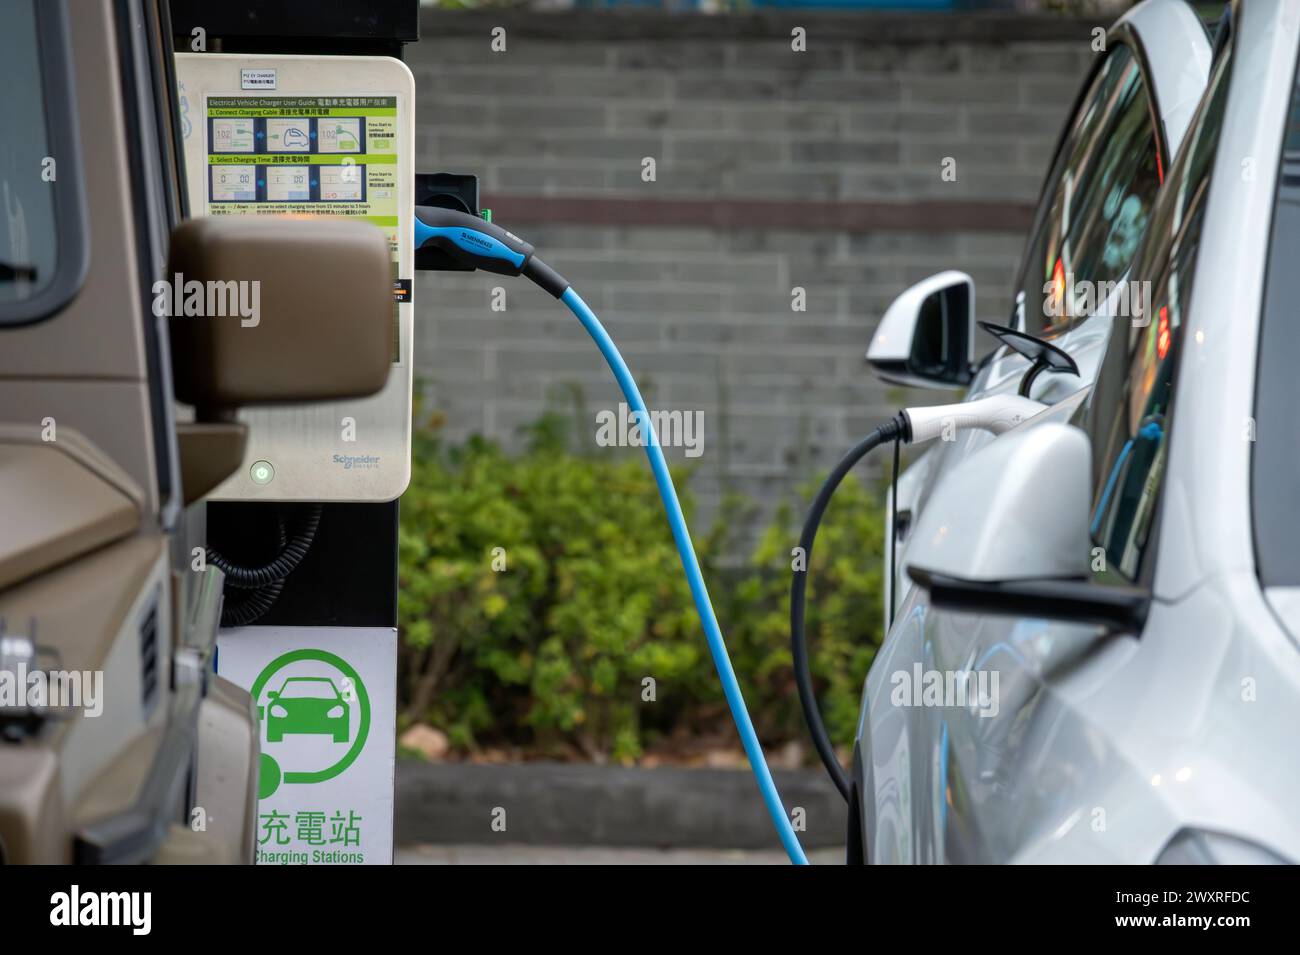 Electric Vehicle charging stations, Hong Kong, China. Stock Photo